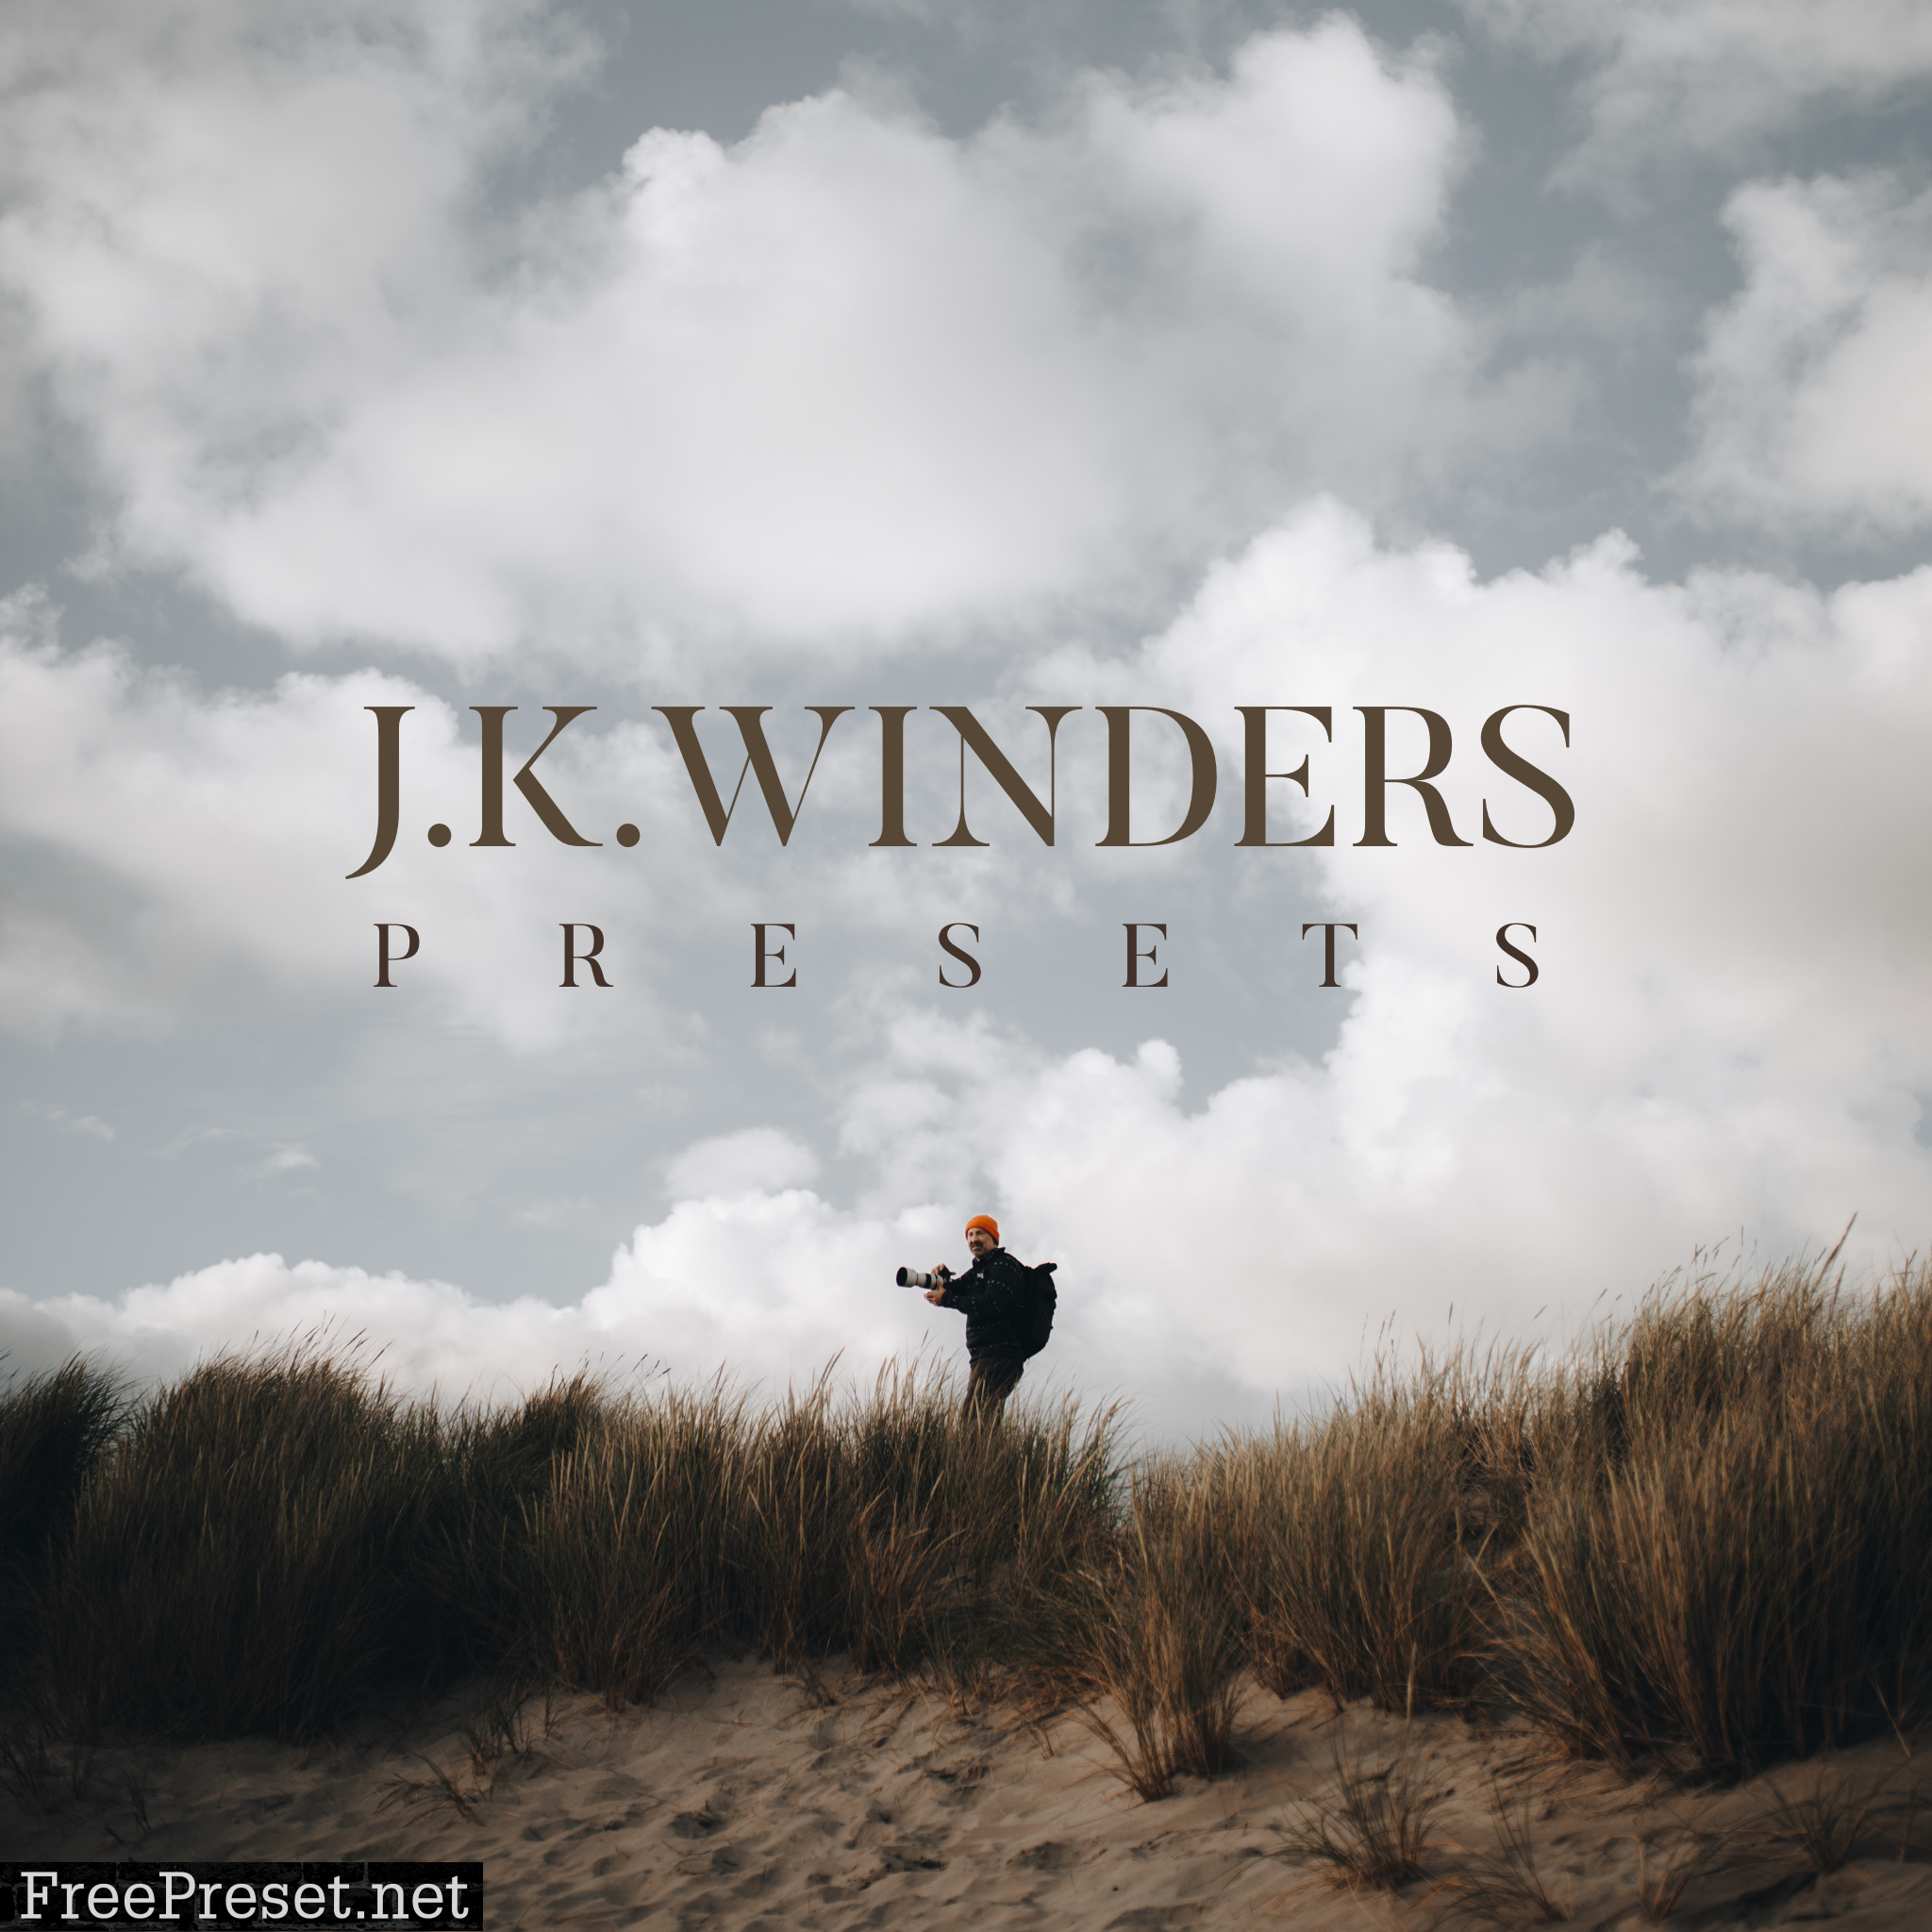 J.K.Winders Presets + Toolkit